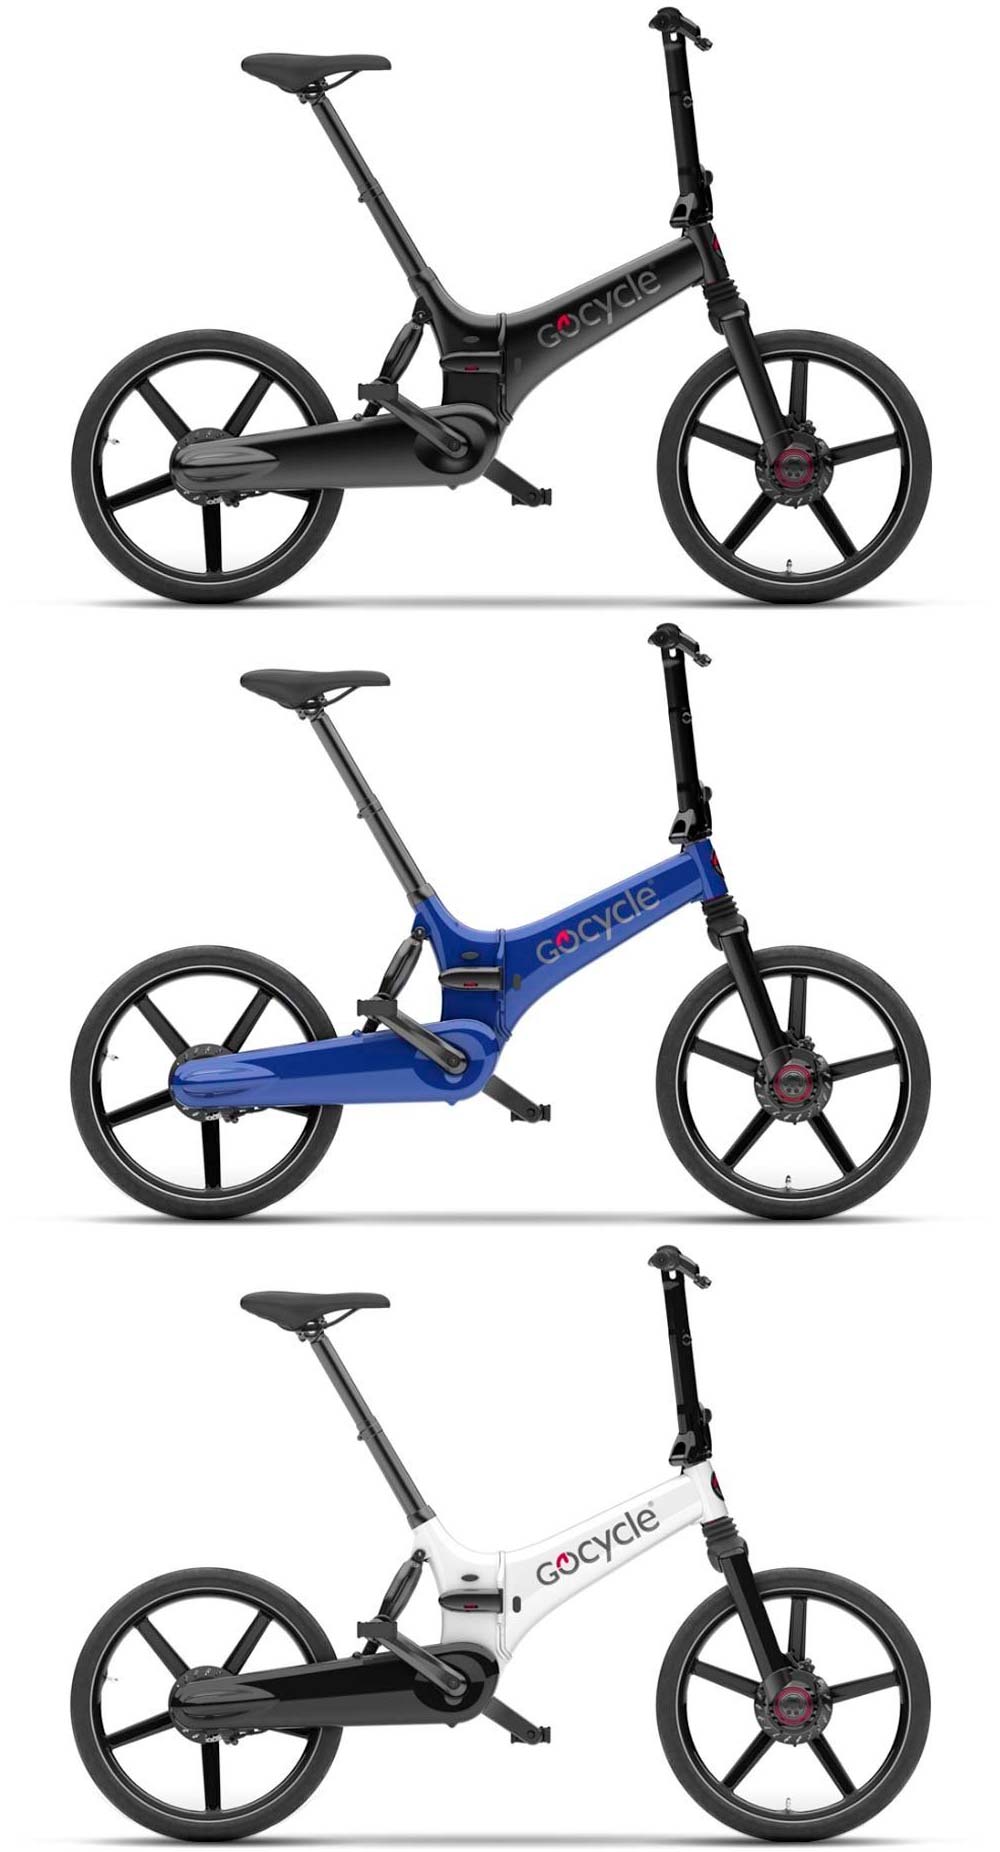 En TodoMountainBike: Gocycle GX, una bici eléctrica plegable con un diseño inspirado en la Fórmula 1